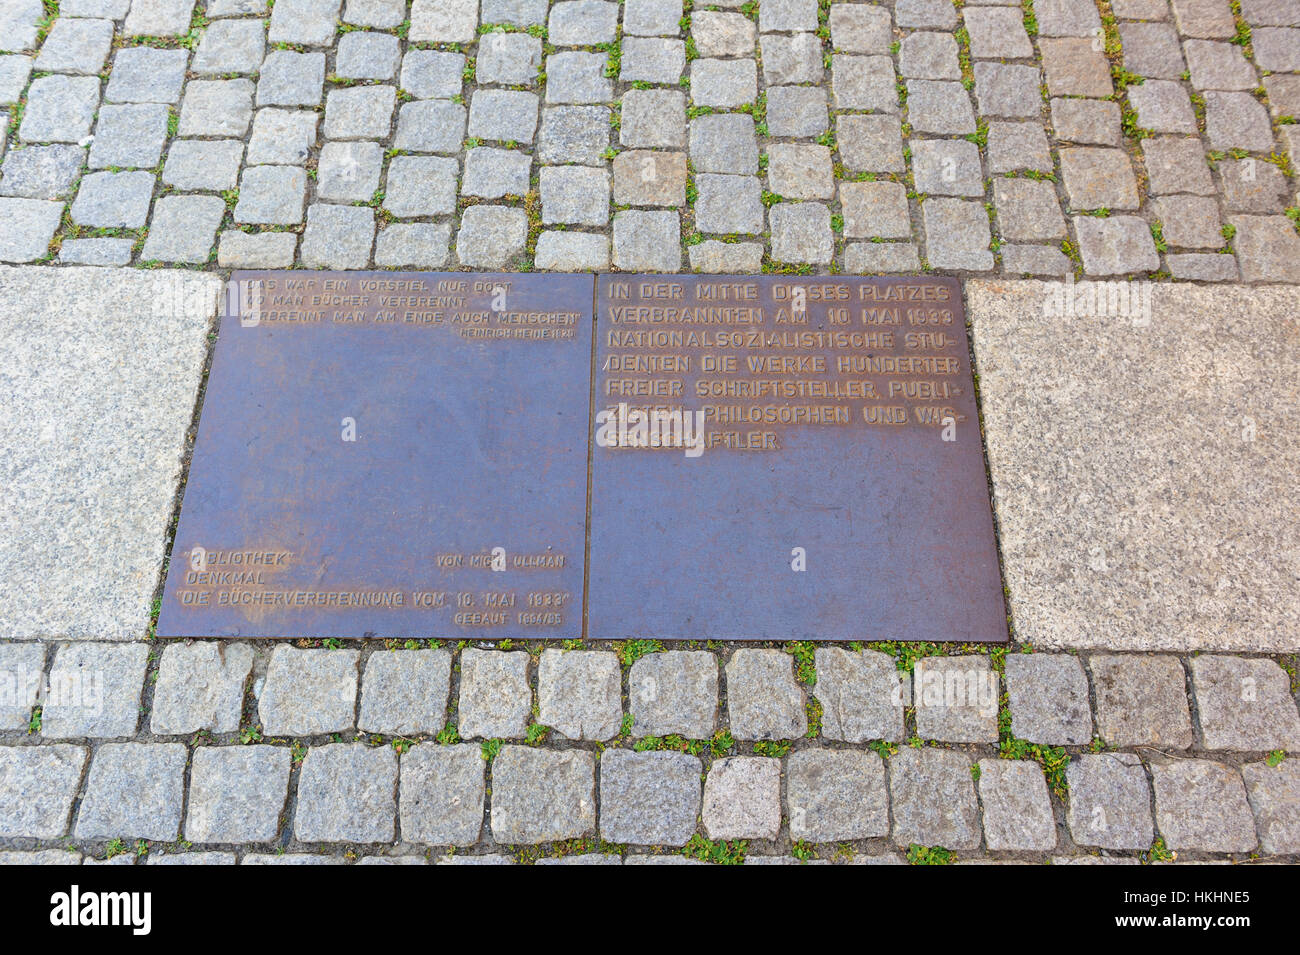 Une plaque de bronze sur le trottoir pour commémorer l 'extérieur' de l'Université Humboldt à Bebelplatz, Berlin, Allemagne. Banque D'Images